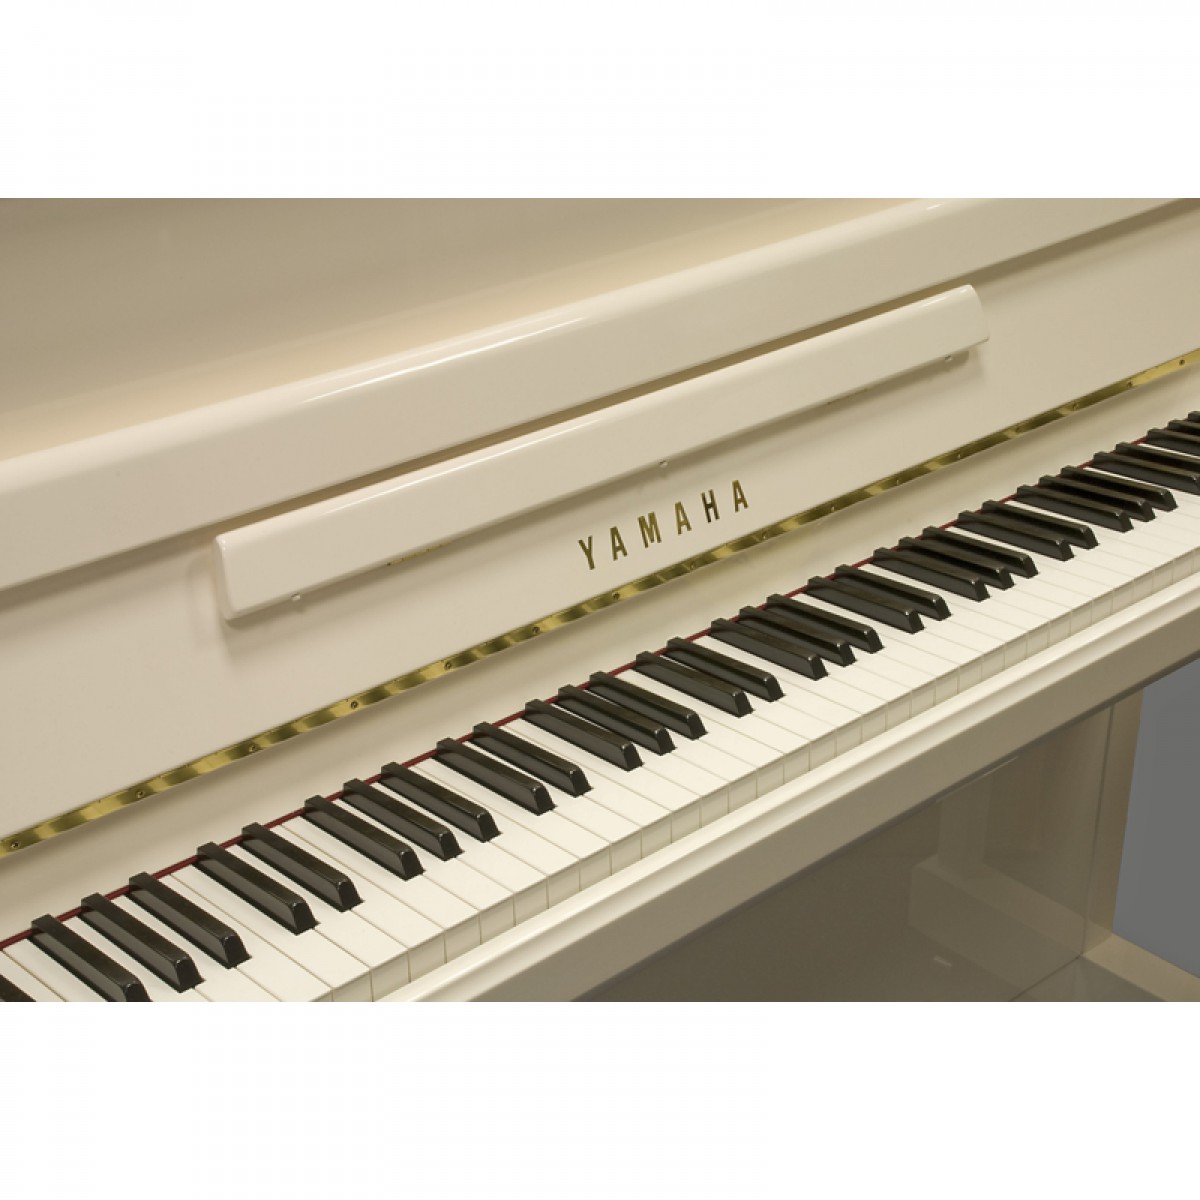 Yamaha Klavier weiss